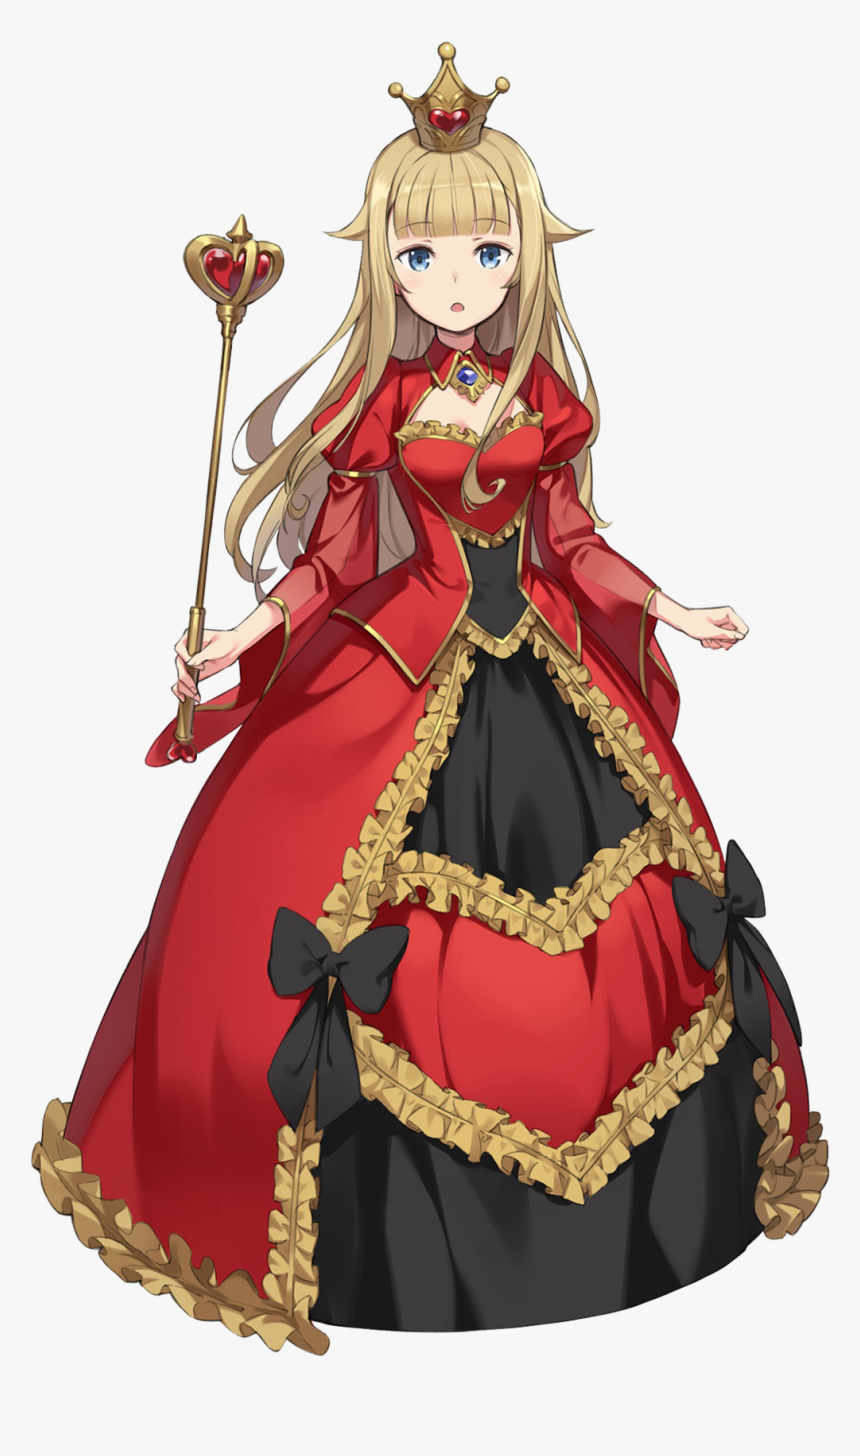 Tranh vẽ anime công chúa váy đỏ cực xinh